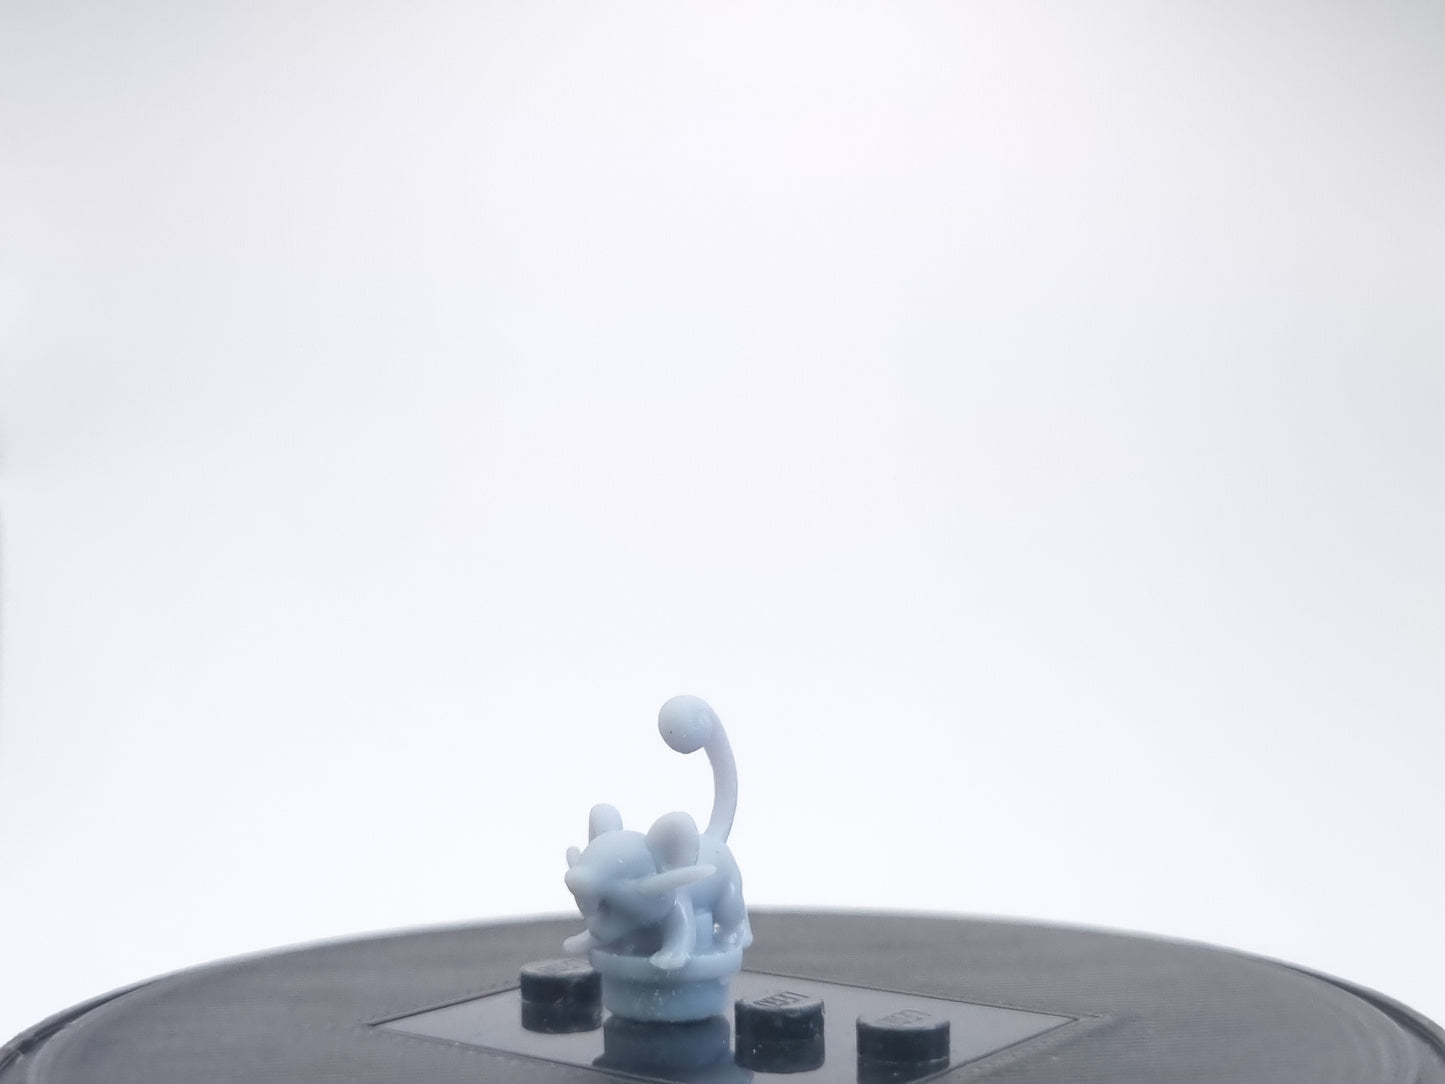 lego compatible 3D printed tiny rat creature!